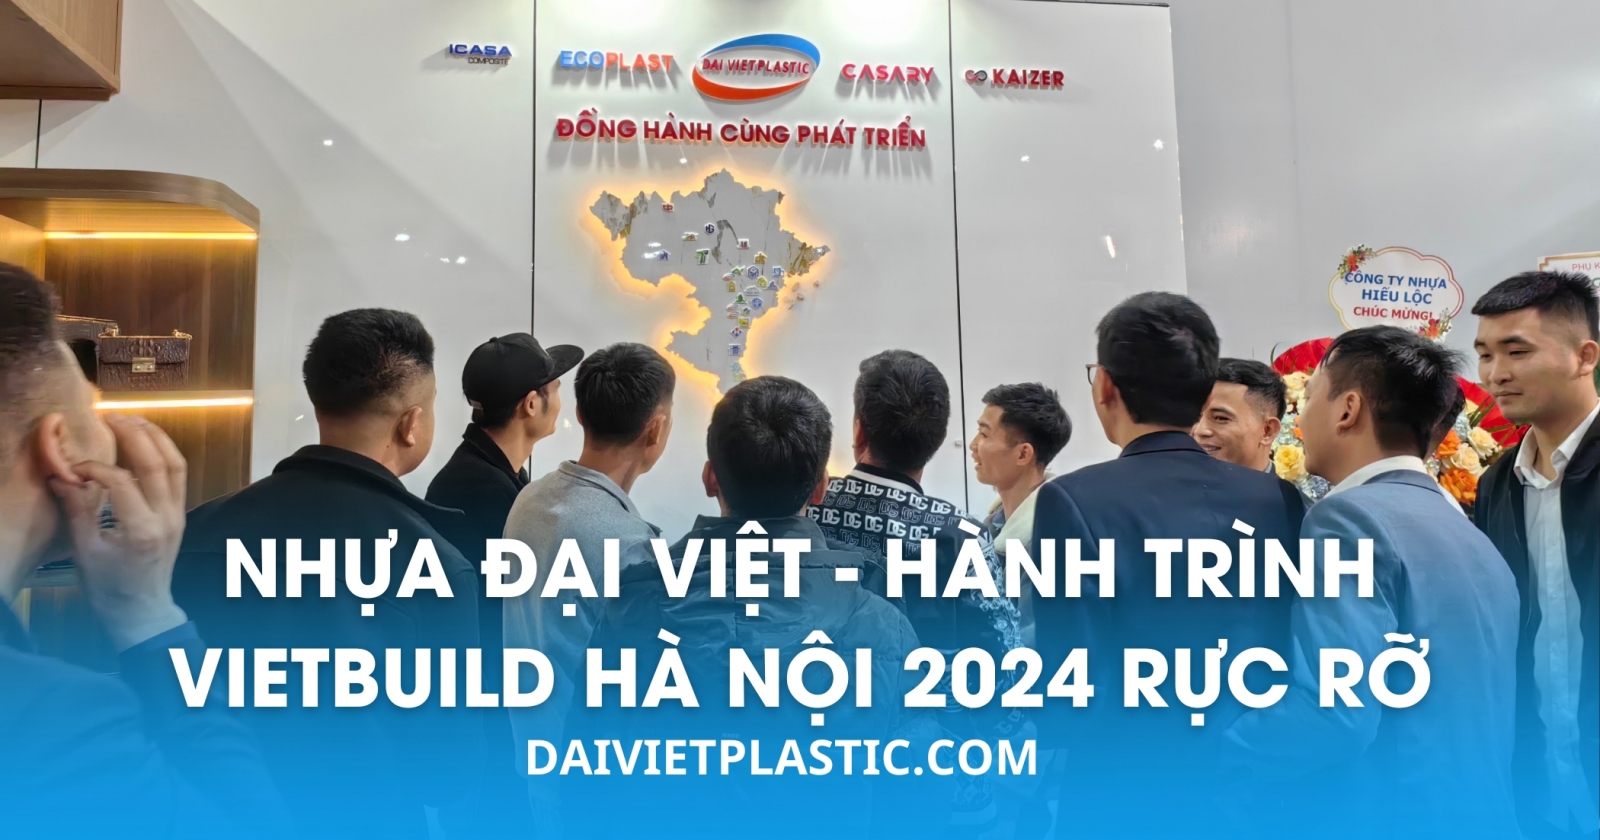 Hành trình Vietbuild Hà Nội 2024 của Nhựa Đại Việt khép lại đầy thành công